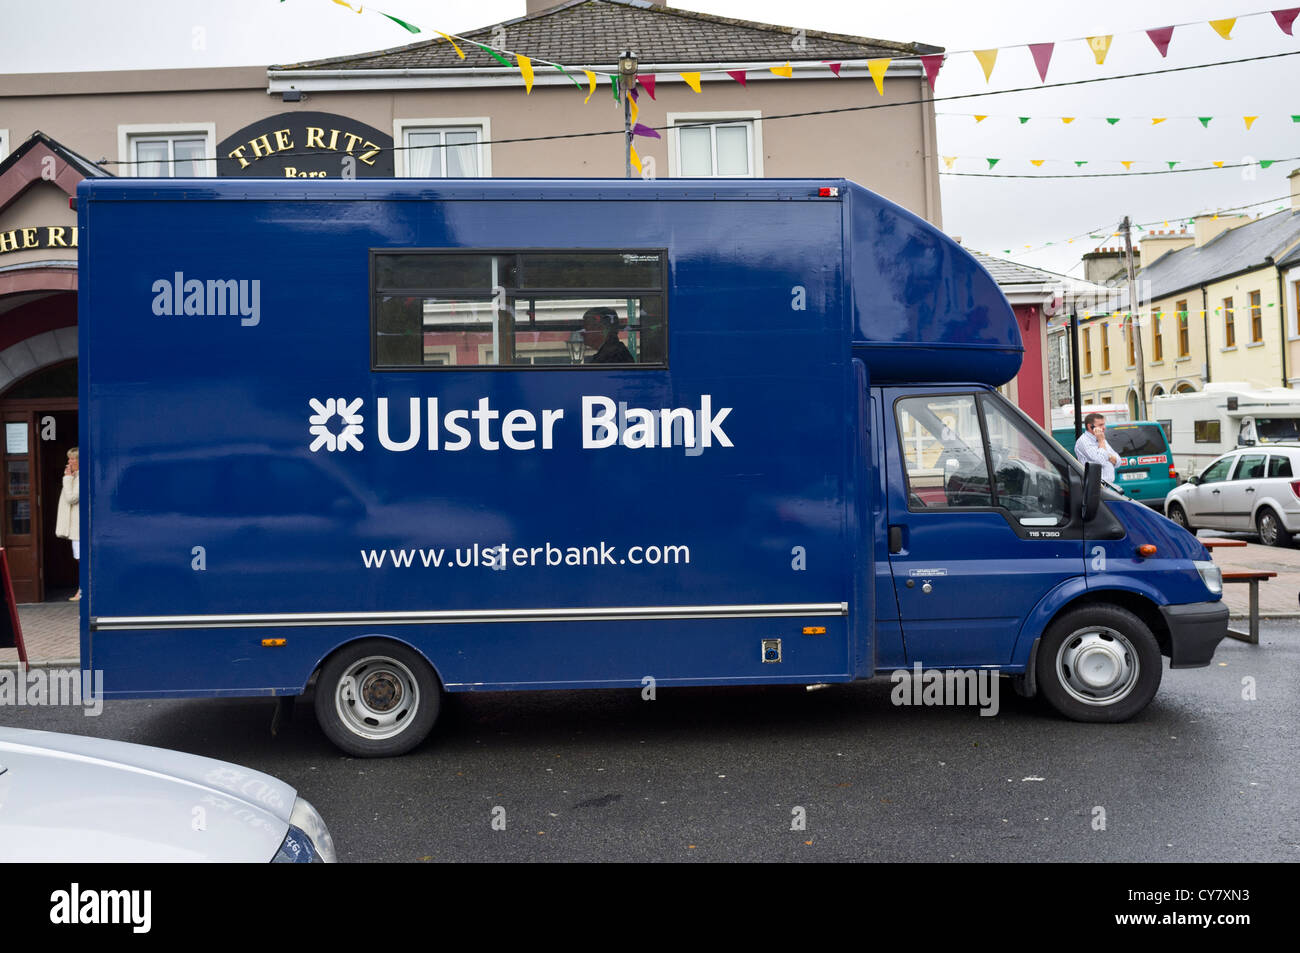 Ulster Bank mobile banking service van in Lisdoonvarna, County Clare, Ireland. Stock Photo